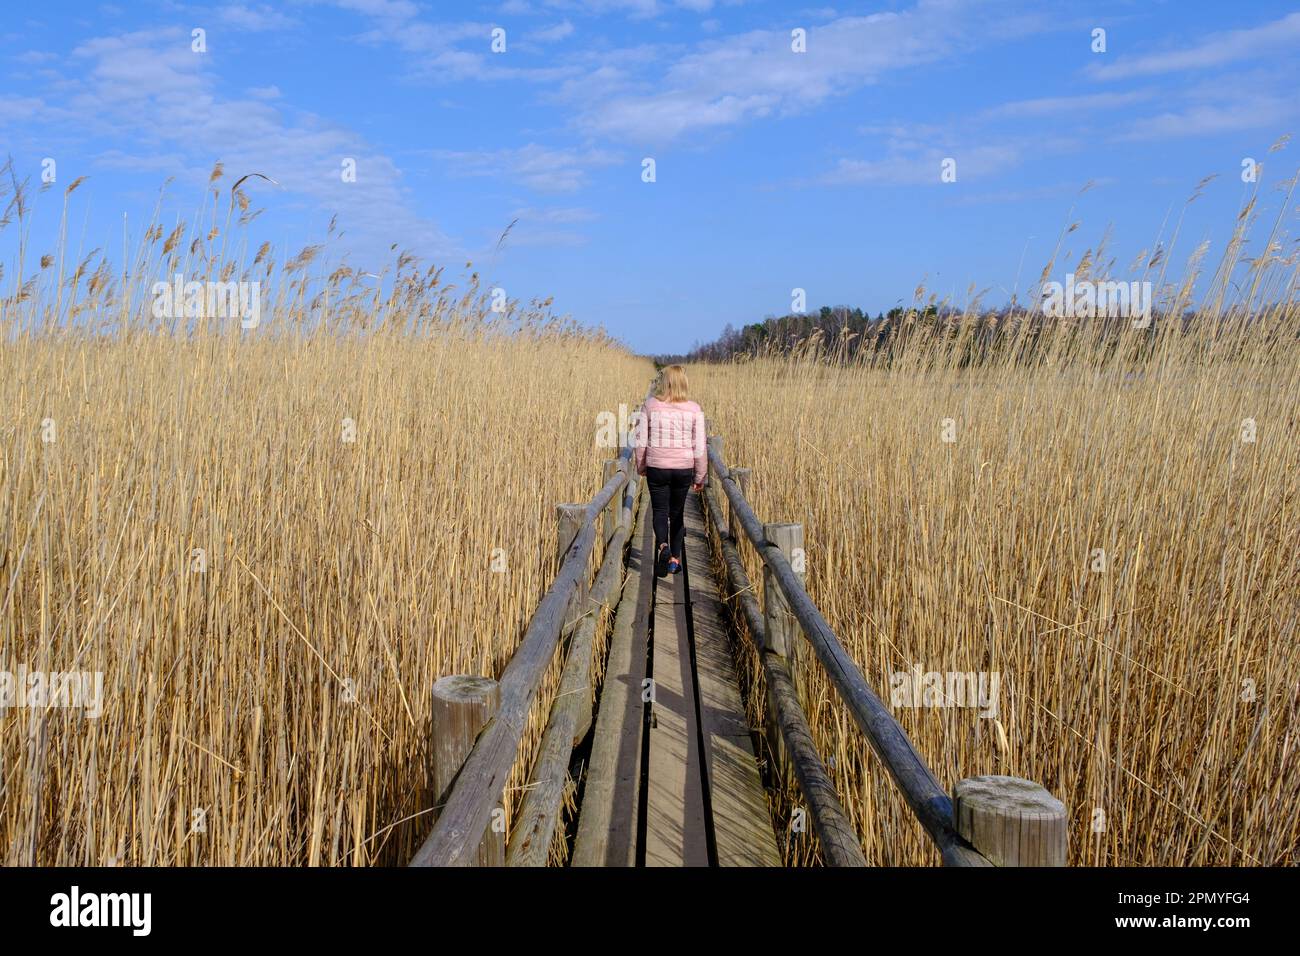 Reed Trail am Kaniera See. Wunderschöne Landschaft mit Holzsteg für Fußgänger. Frühling in Lettland. Eine Frau geht an einem hölzernen Touristenpa entlang Stockfoto